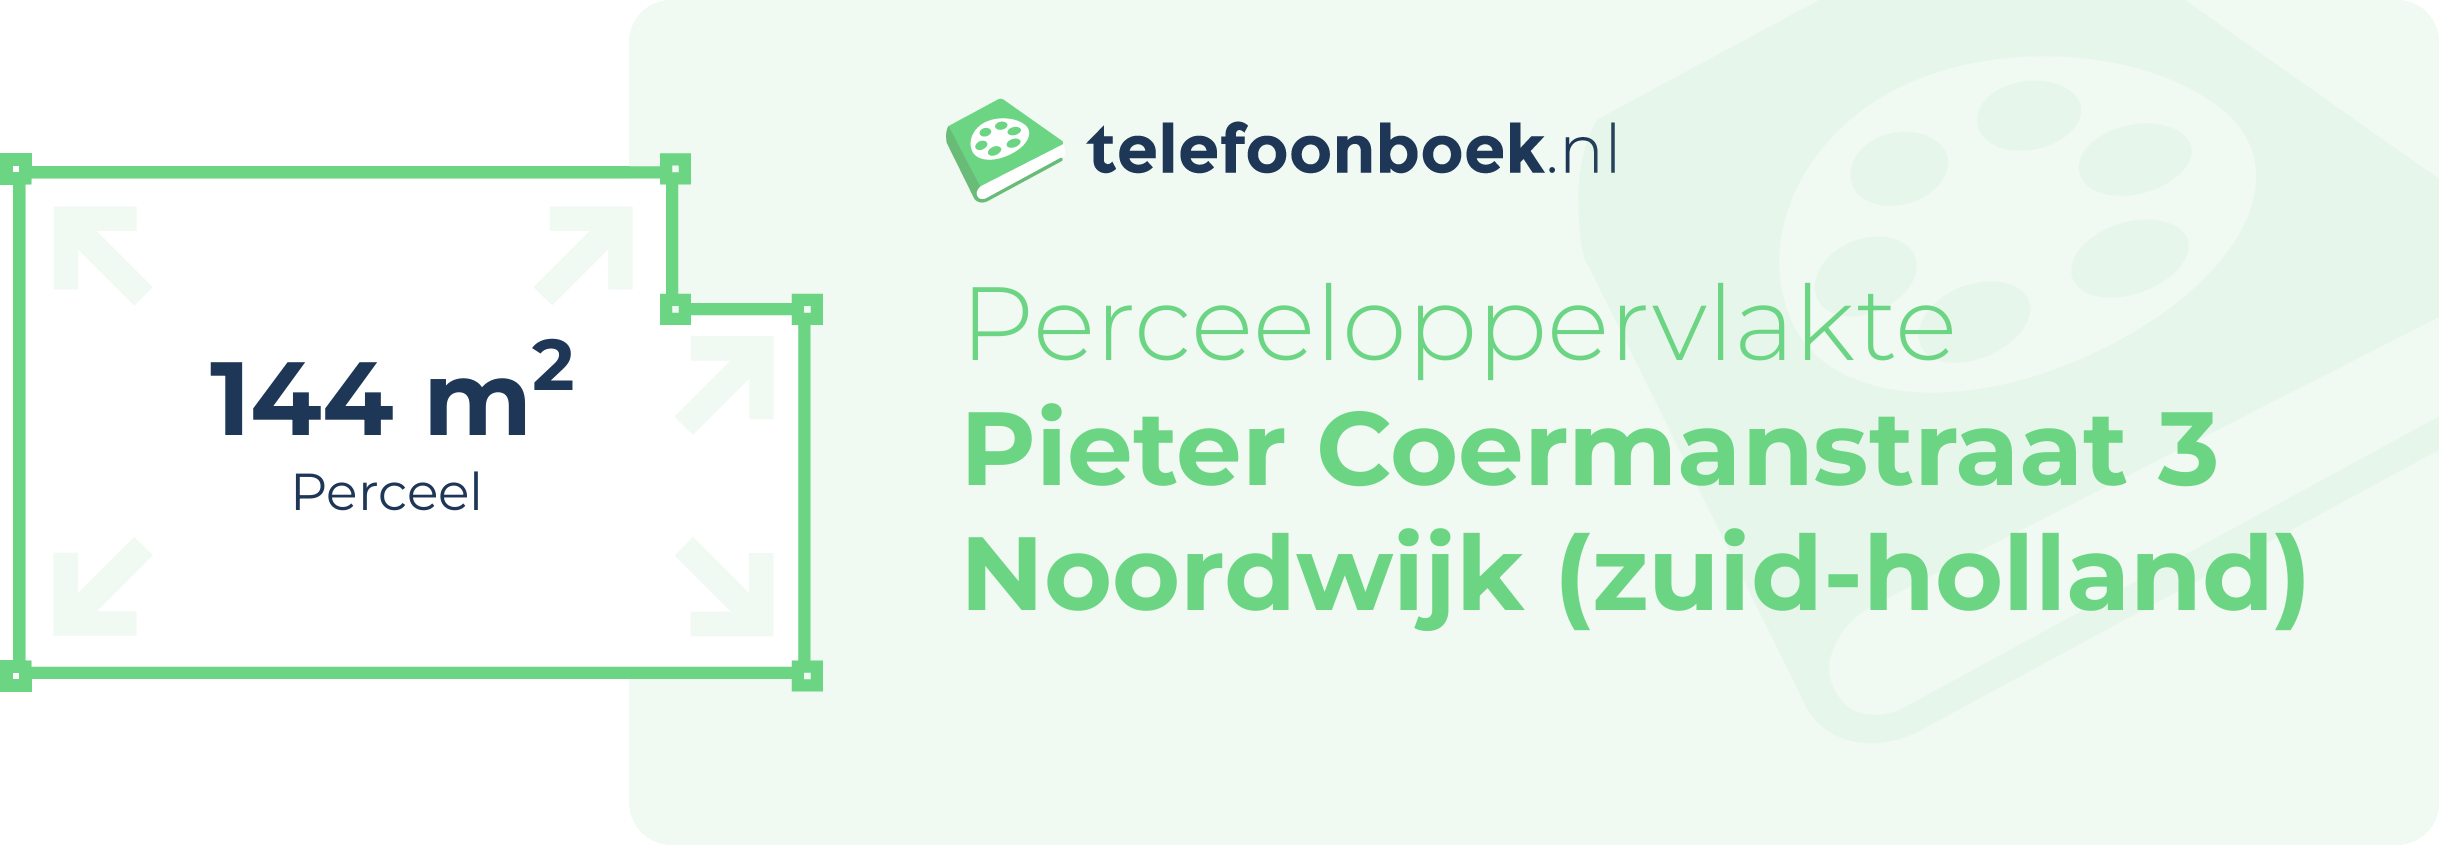 Perceeloppervlakte Pieter Coermanstraat 3 Noordwijk (Zuid-Holland)